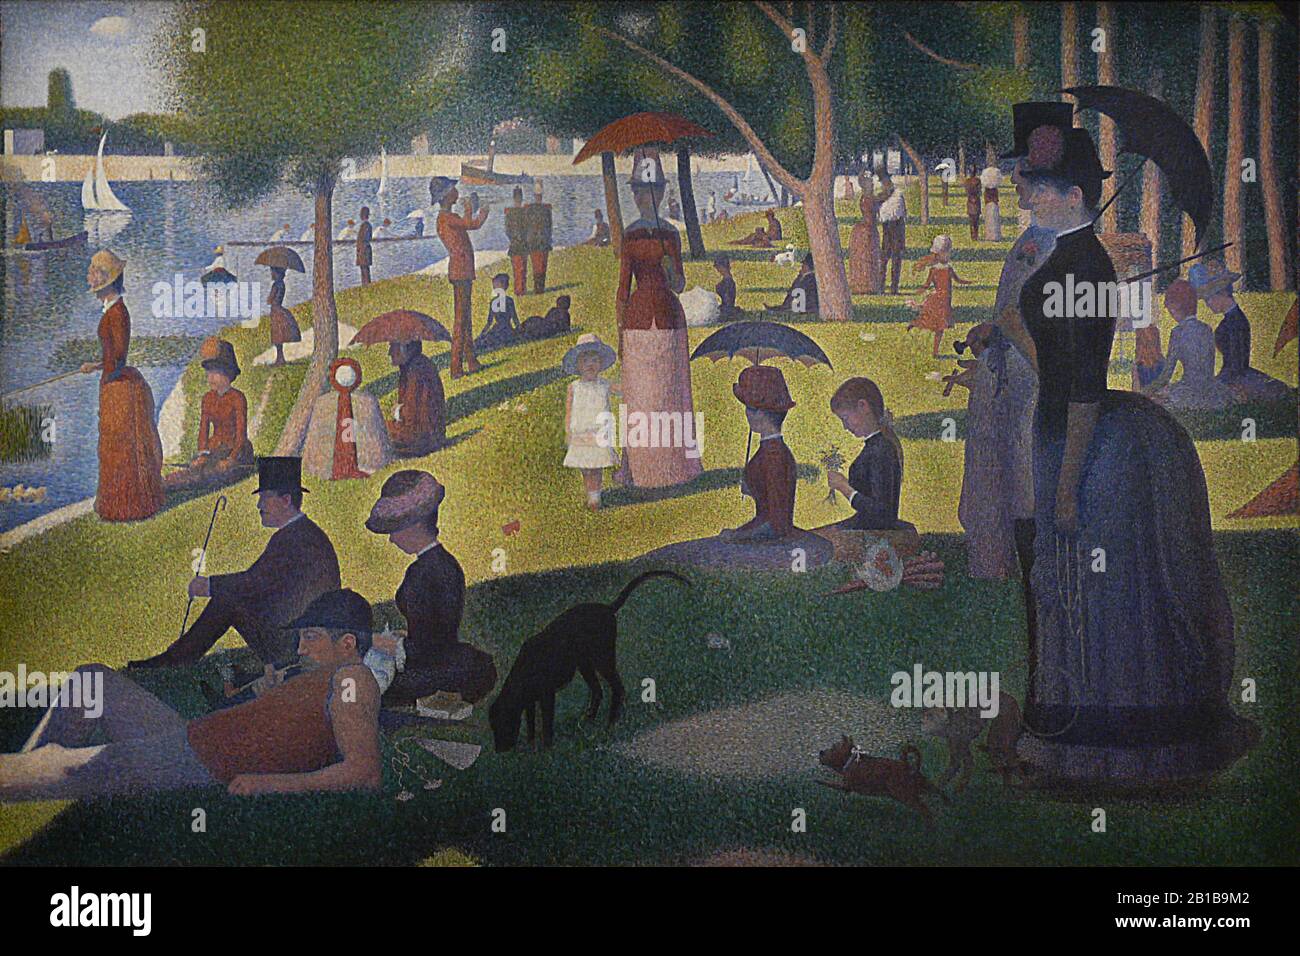 - Pittura 19th Secolo di Georges Seurat - immagine Ad Altissima risoluzione e qualità Foto Stock